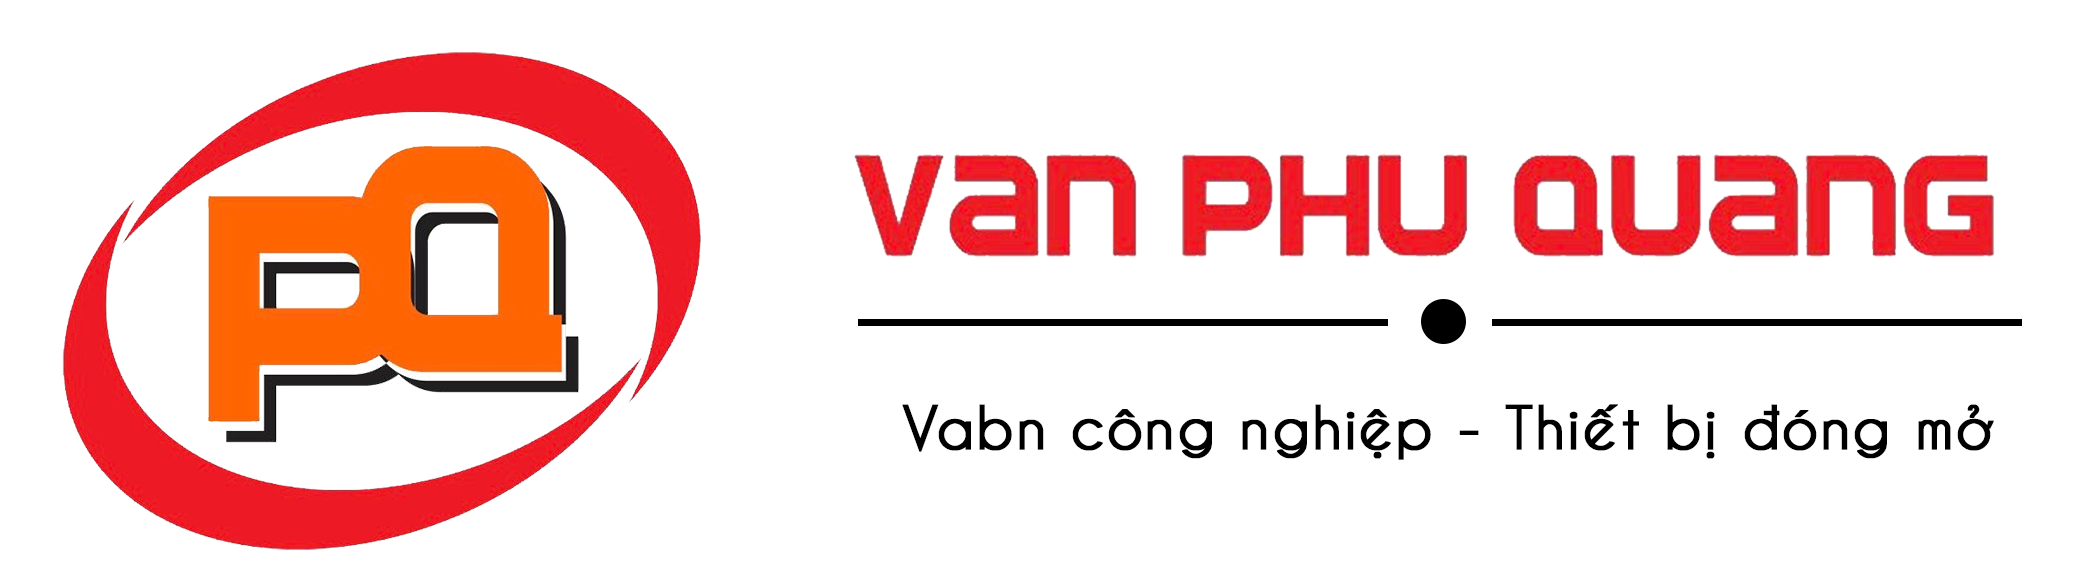 Van điện từ inox uy tín, chất lượng tại Van Phú Quang